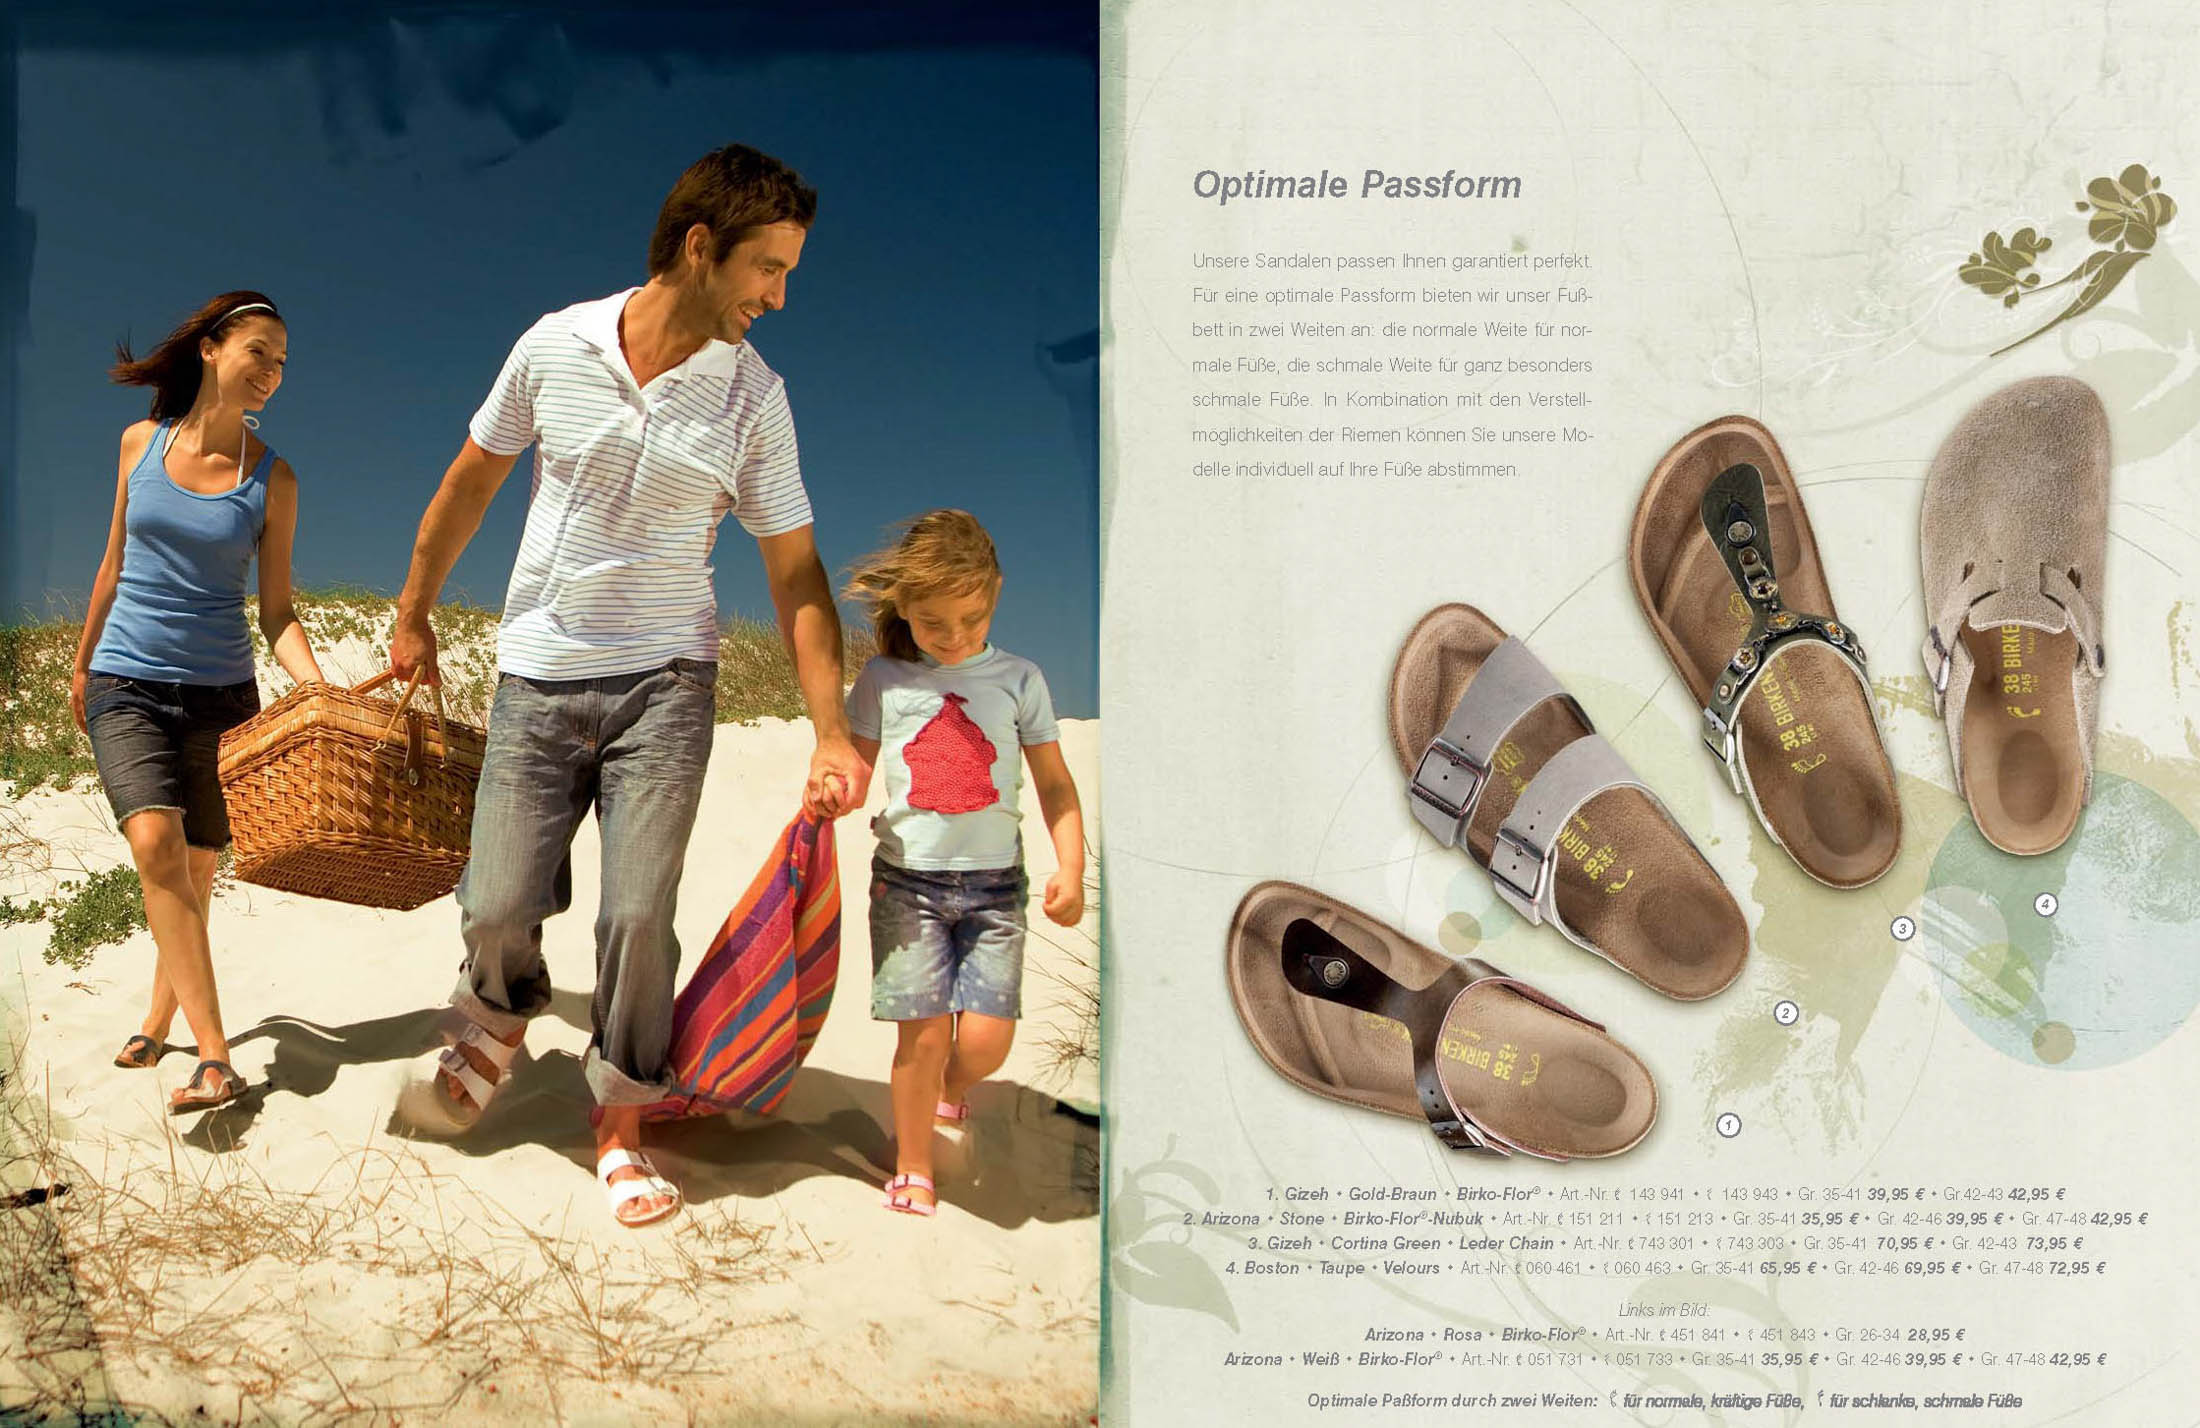 Eine dreiköpfige Familie, ein Mann, eine Frau und ein kleiner Junge, gehen gemeinsam mit Strandausrüstung an einem Sandstrand spazieren. Auf der rechten Seite des Bildes ist eine Werbung für Sandalen zu sehen. © Fotografie Tomas Rodriguez